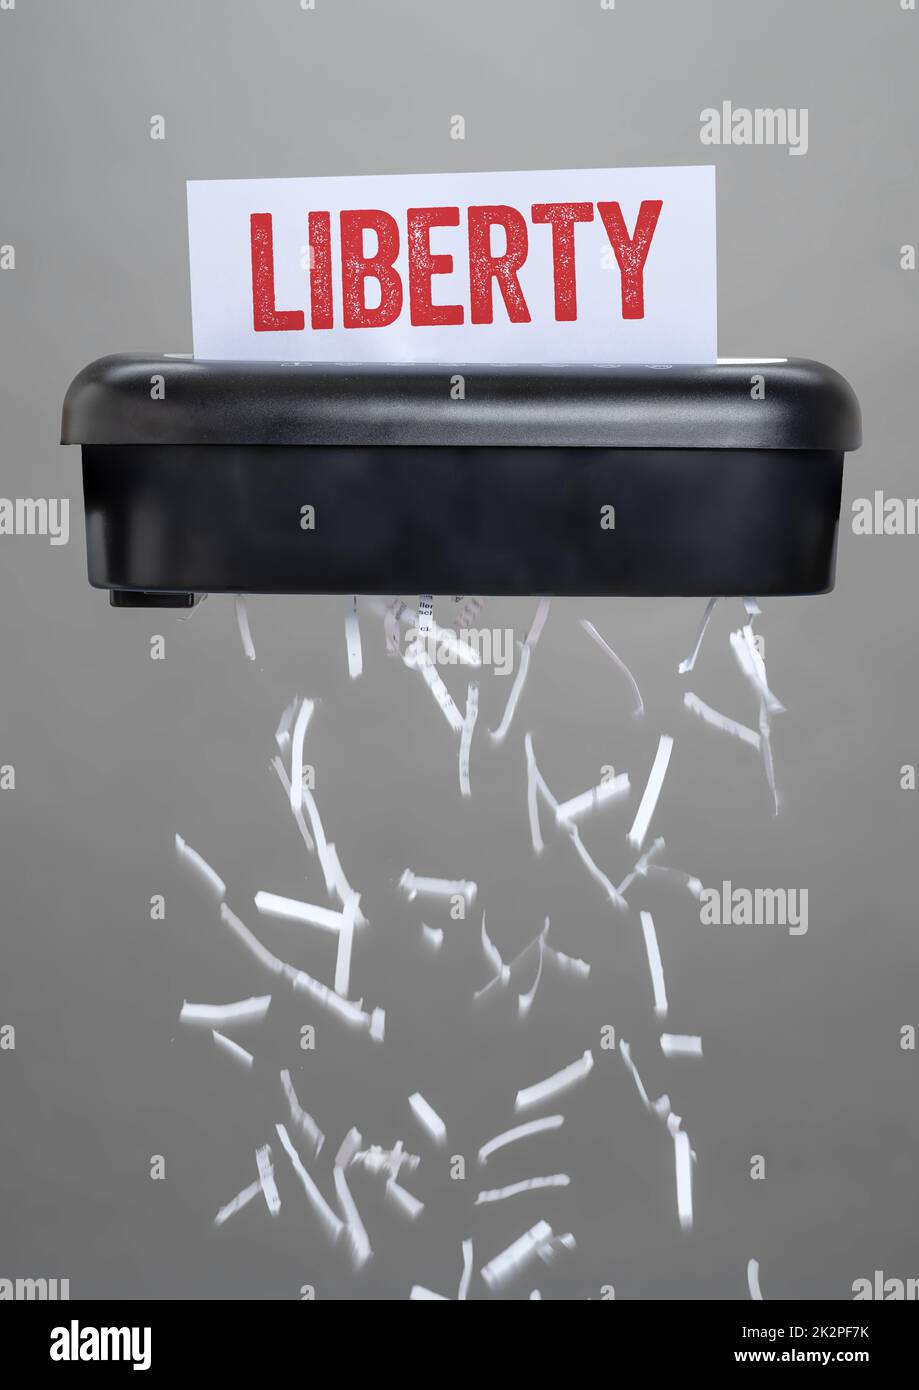 Ein Aktenvernichter, der ein Dokument zerstört - Liberty Stockfoto